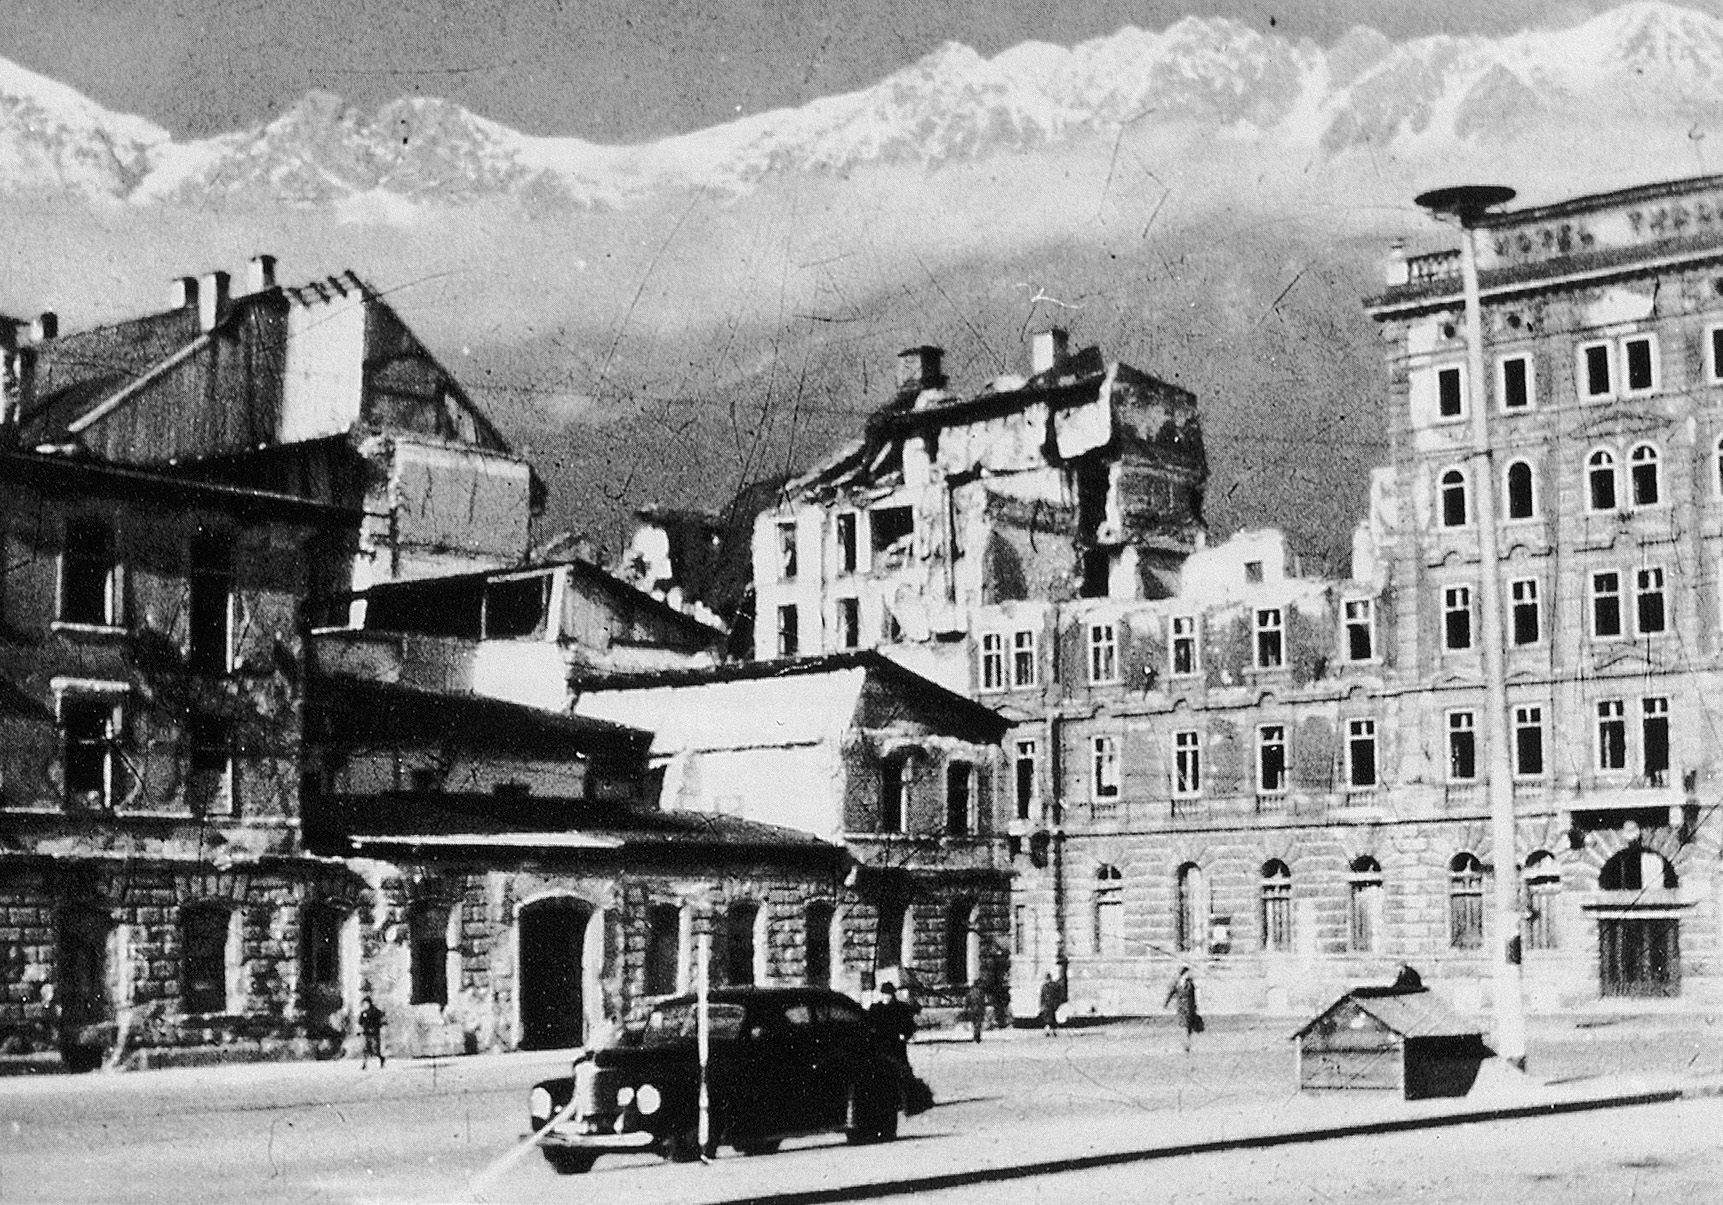 Zerbombte Hotels nach dem Krieg